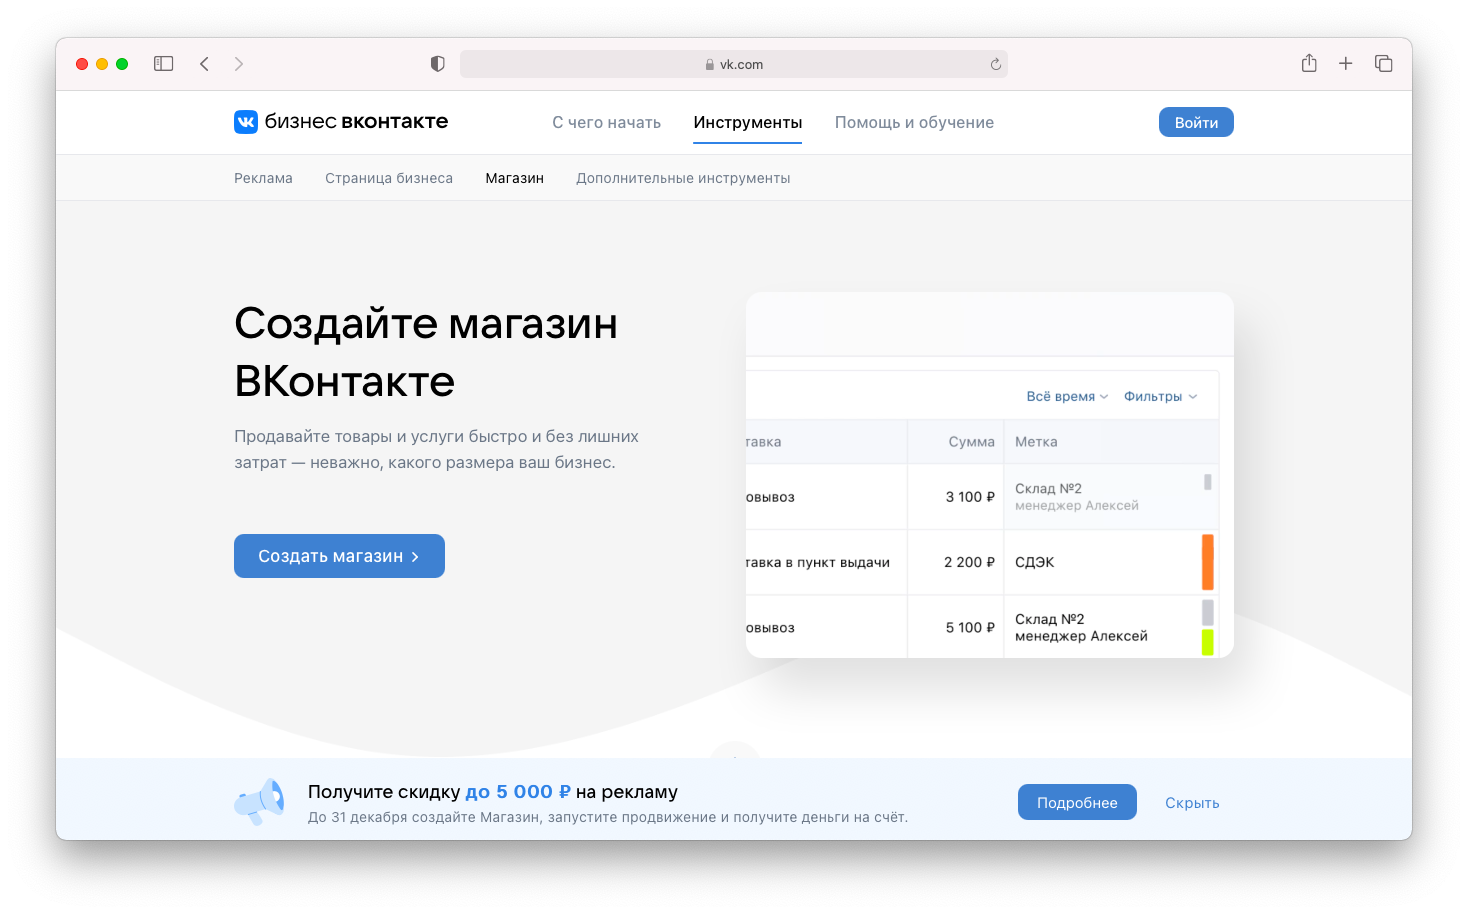 Создайте магазин ВКонтакте